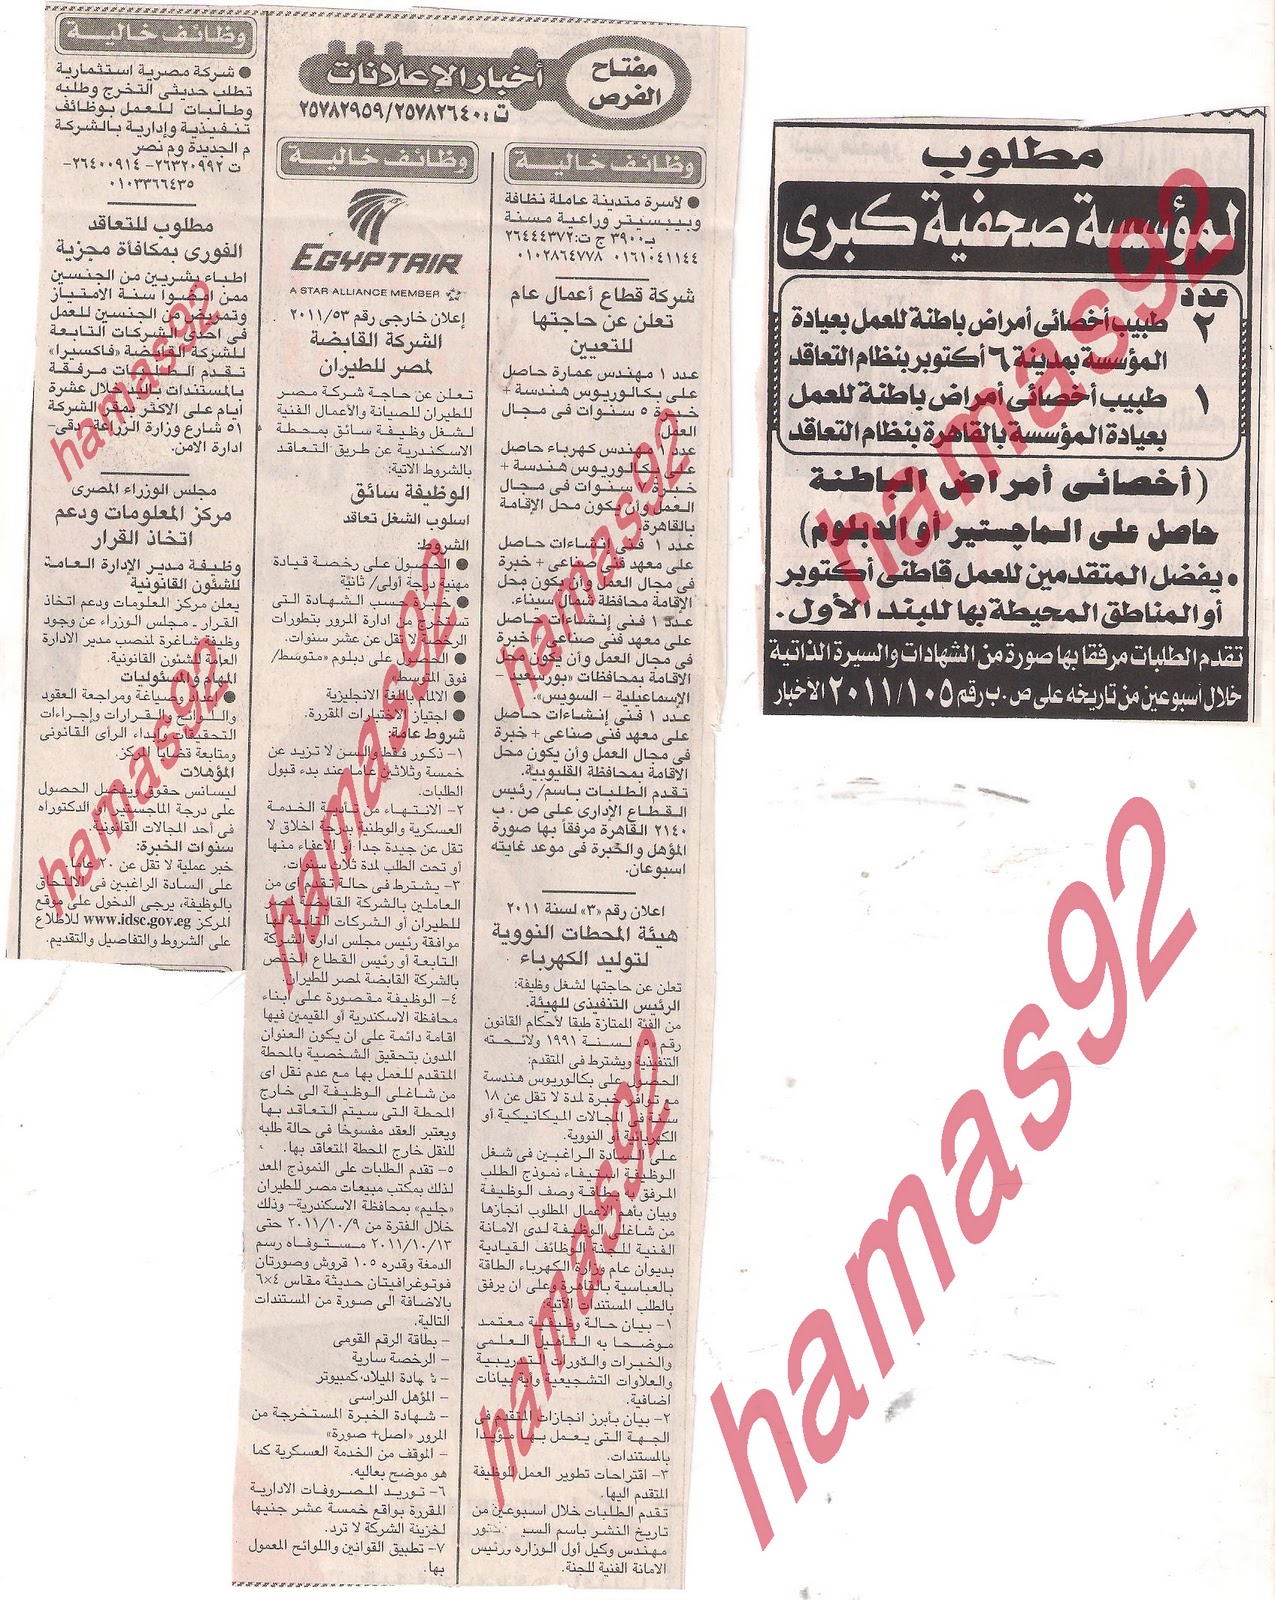 وظائف جريدة الاخبار 1/10/2011 -وظائف خالية من جريدة الاخبار 1 اكتوبر 2011  Picture+002